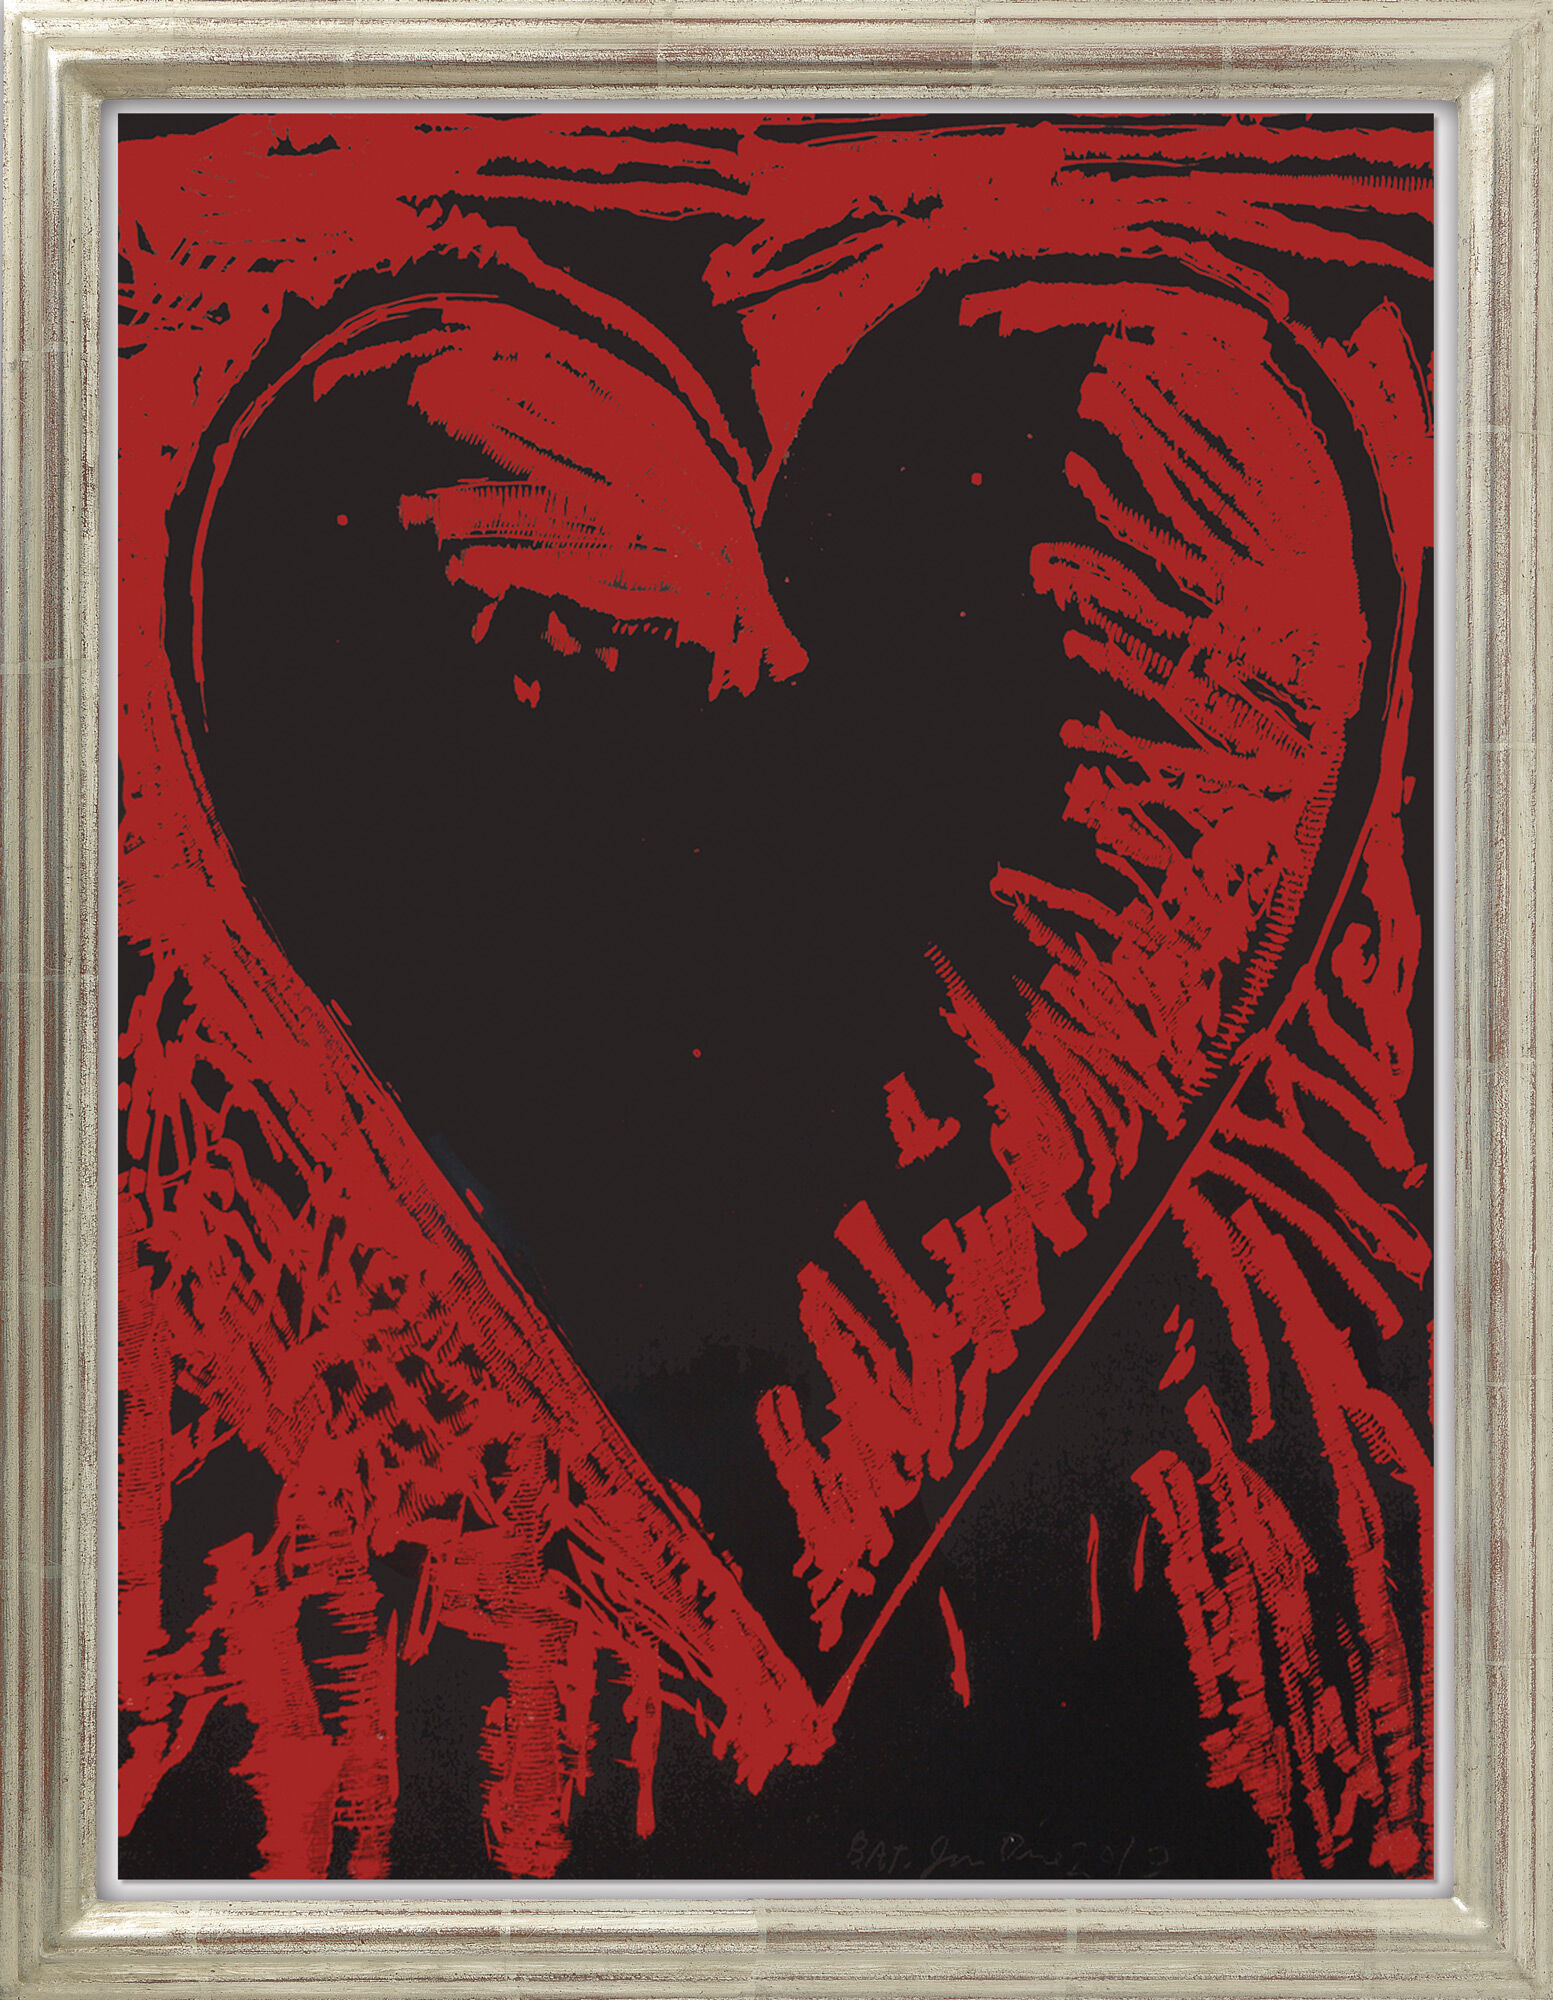 Bild "The Black and Red Heart" (2013) von Jim Dine